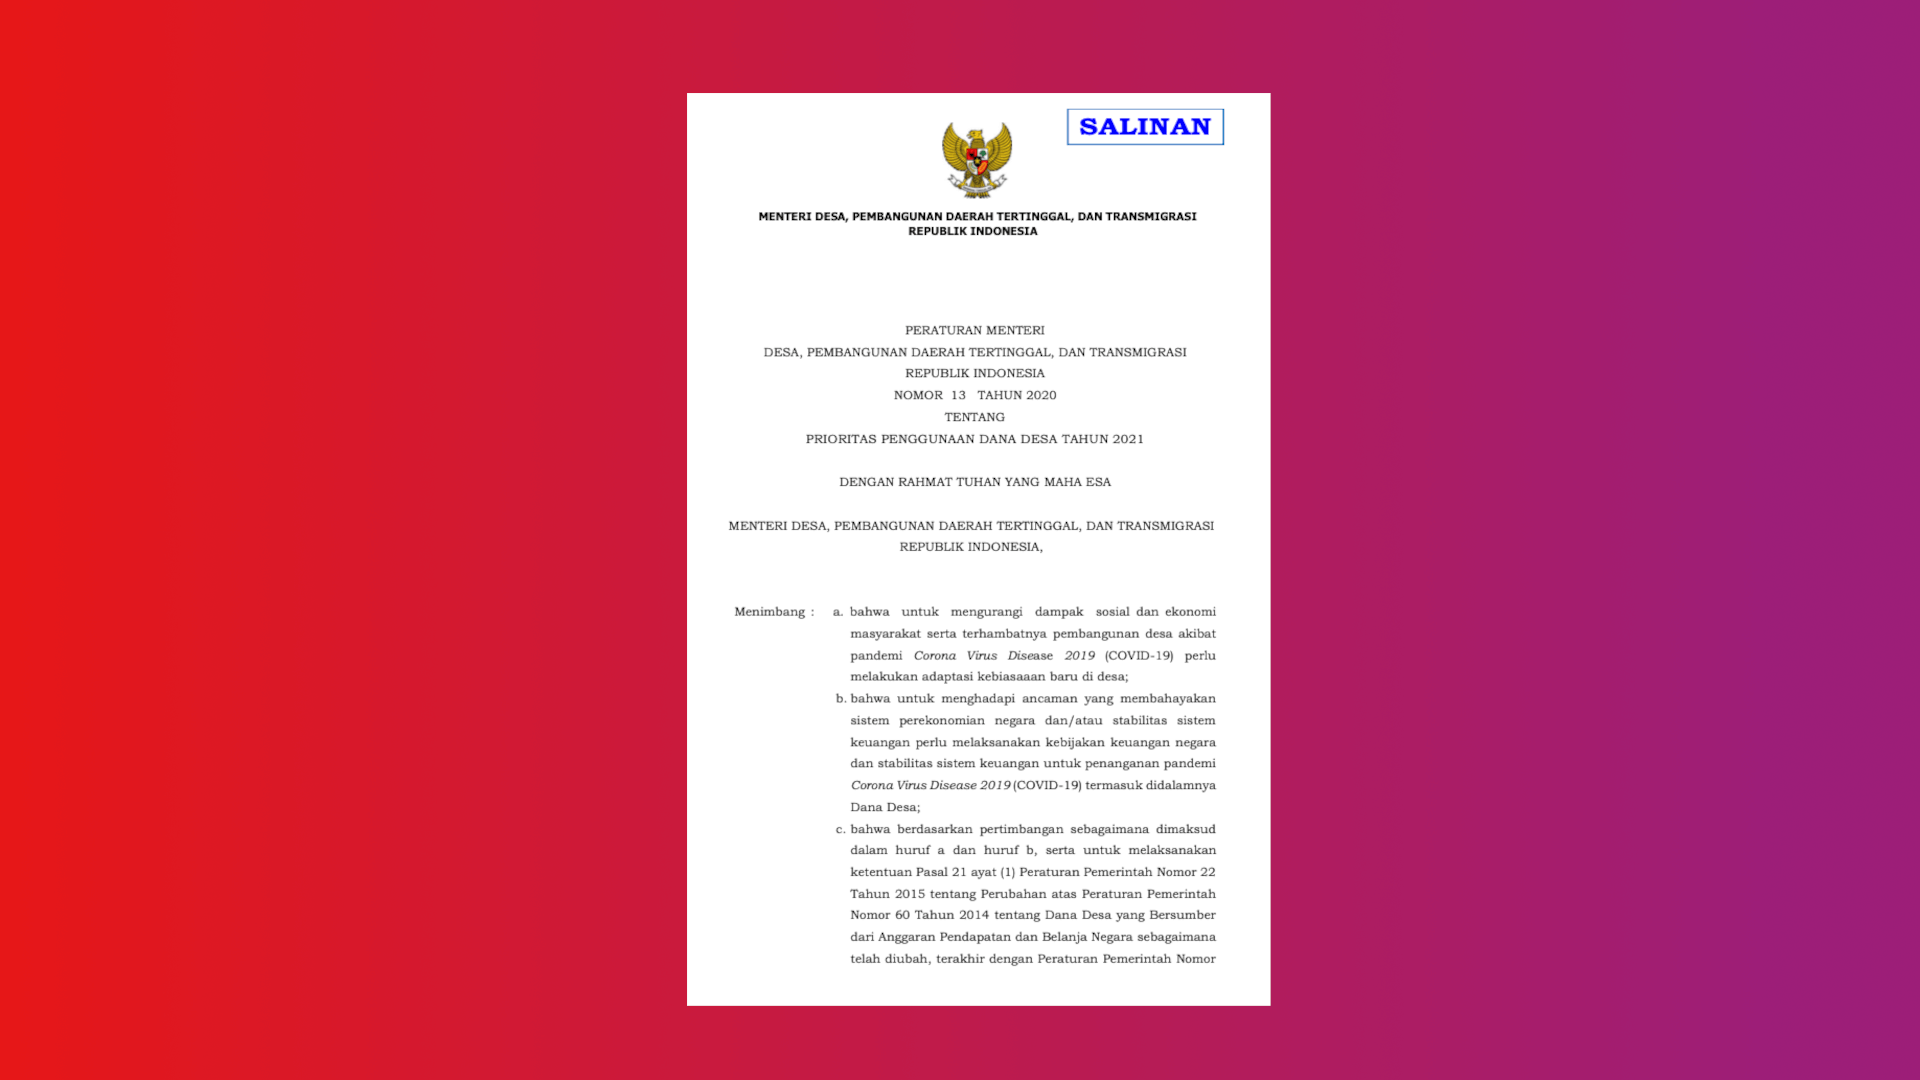 Peraturan Menteri Desa, Pembangunan Daerah Tertinggal, Dan Transmigrasi Republik Indonesia Nomor 13 Tahun 2020 Tentang Prioritas Penggunaan Dana Desa Tahun 2021